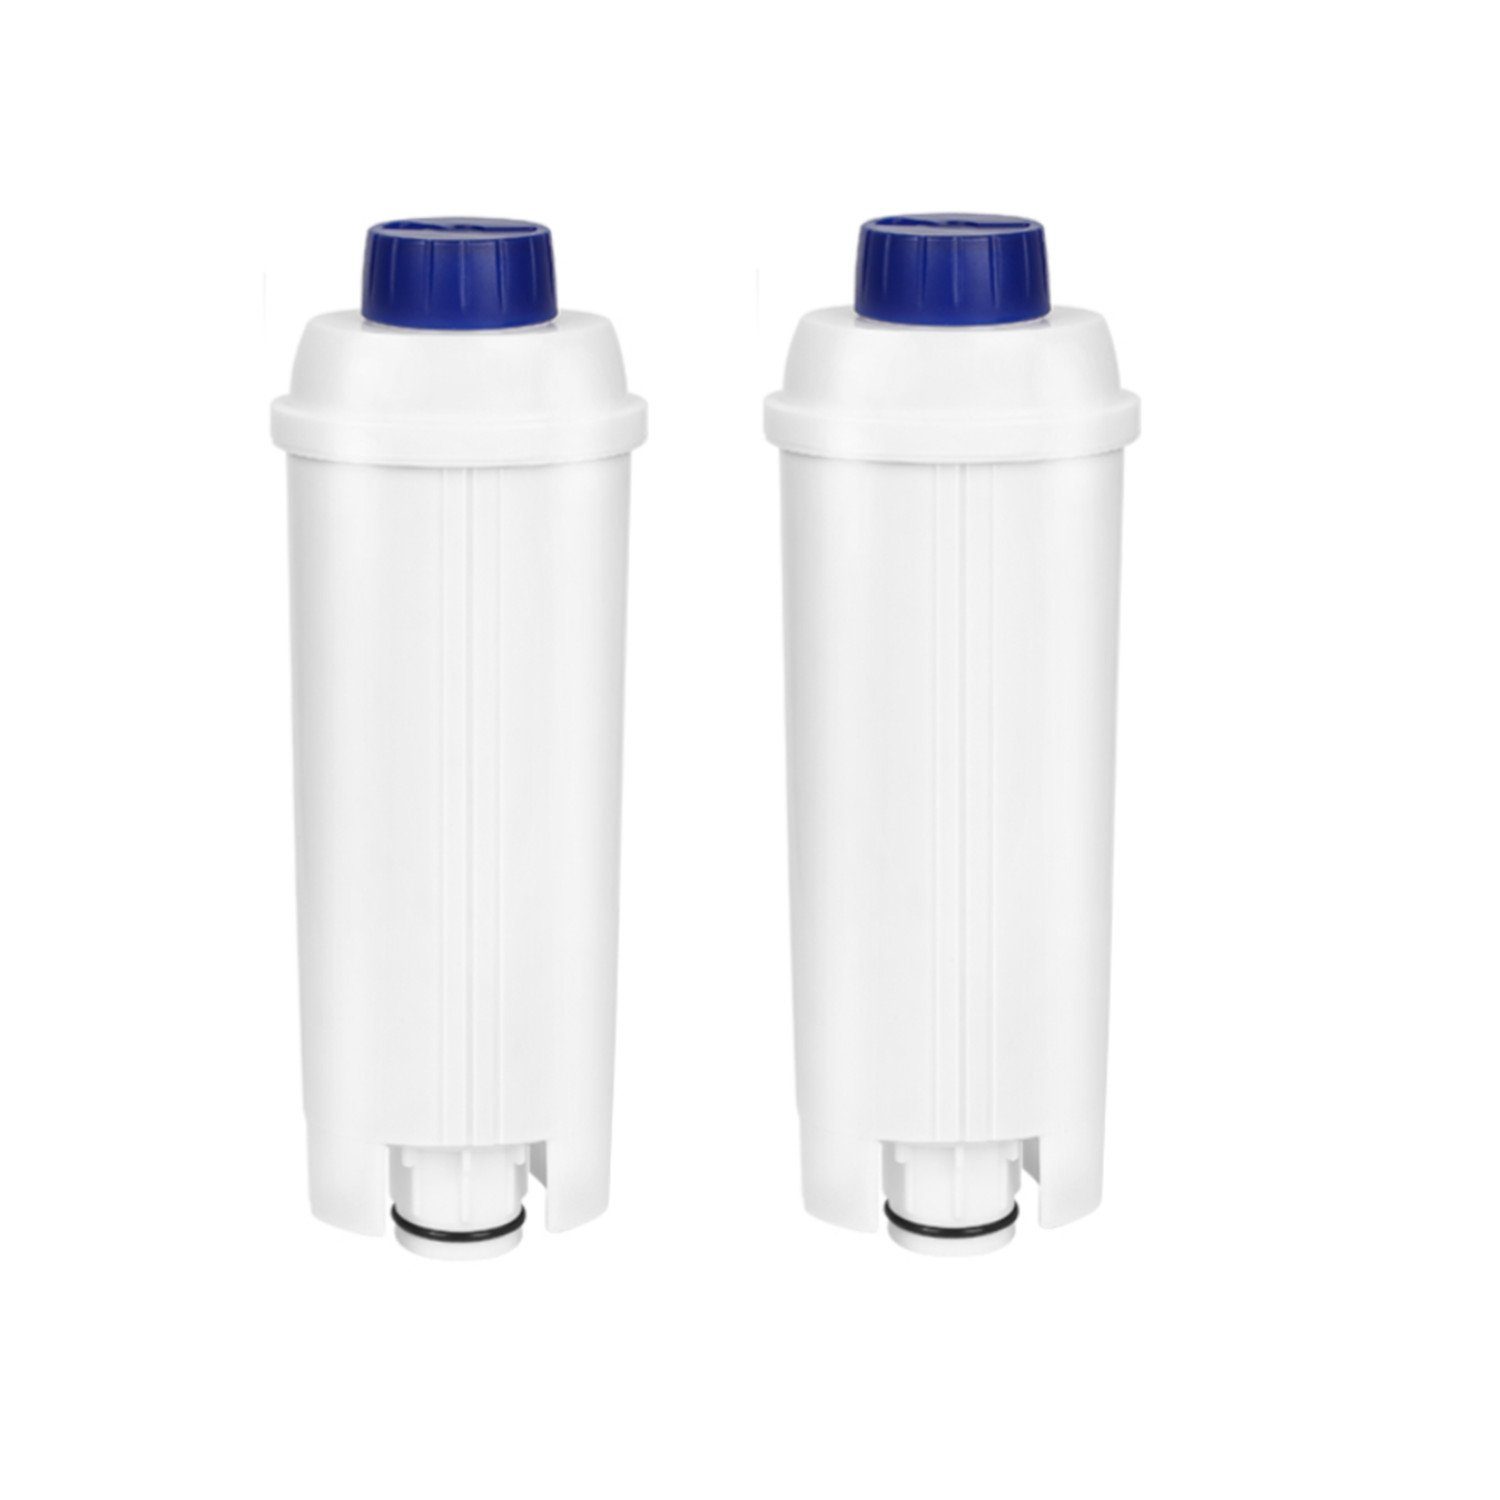 Clanmacy Wasserfilter 2-10x Wasserfilter für Delonghi kompatibel für DLSC002 ECAM ETAM Zubehör für EC800 EC680 für Delonghi DLSC002 mit Aktivkohle 60 Liter Wasser